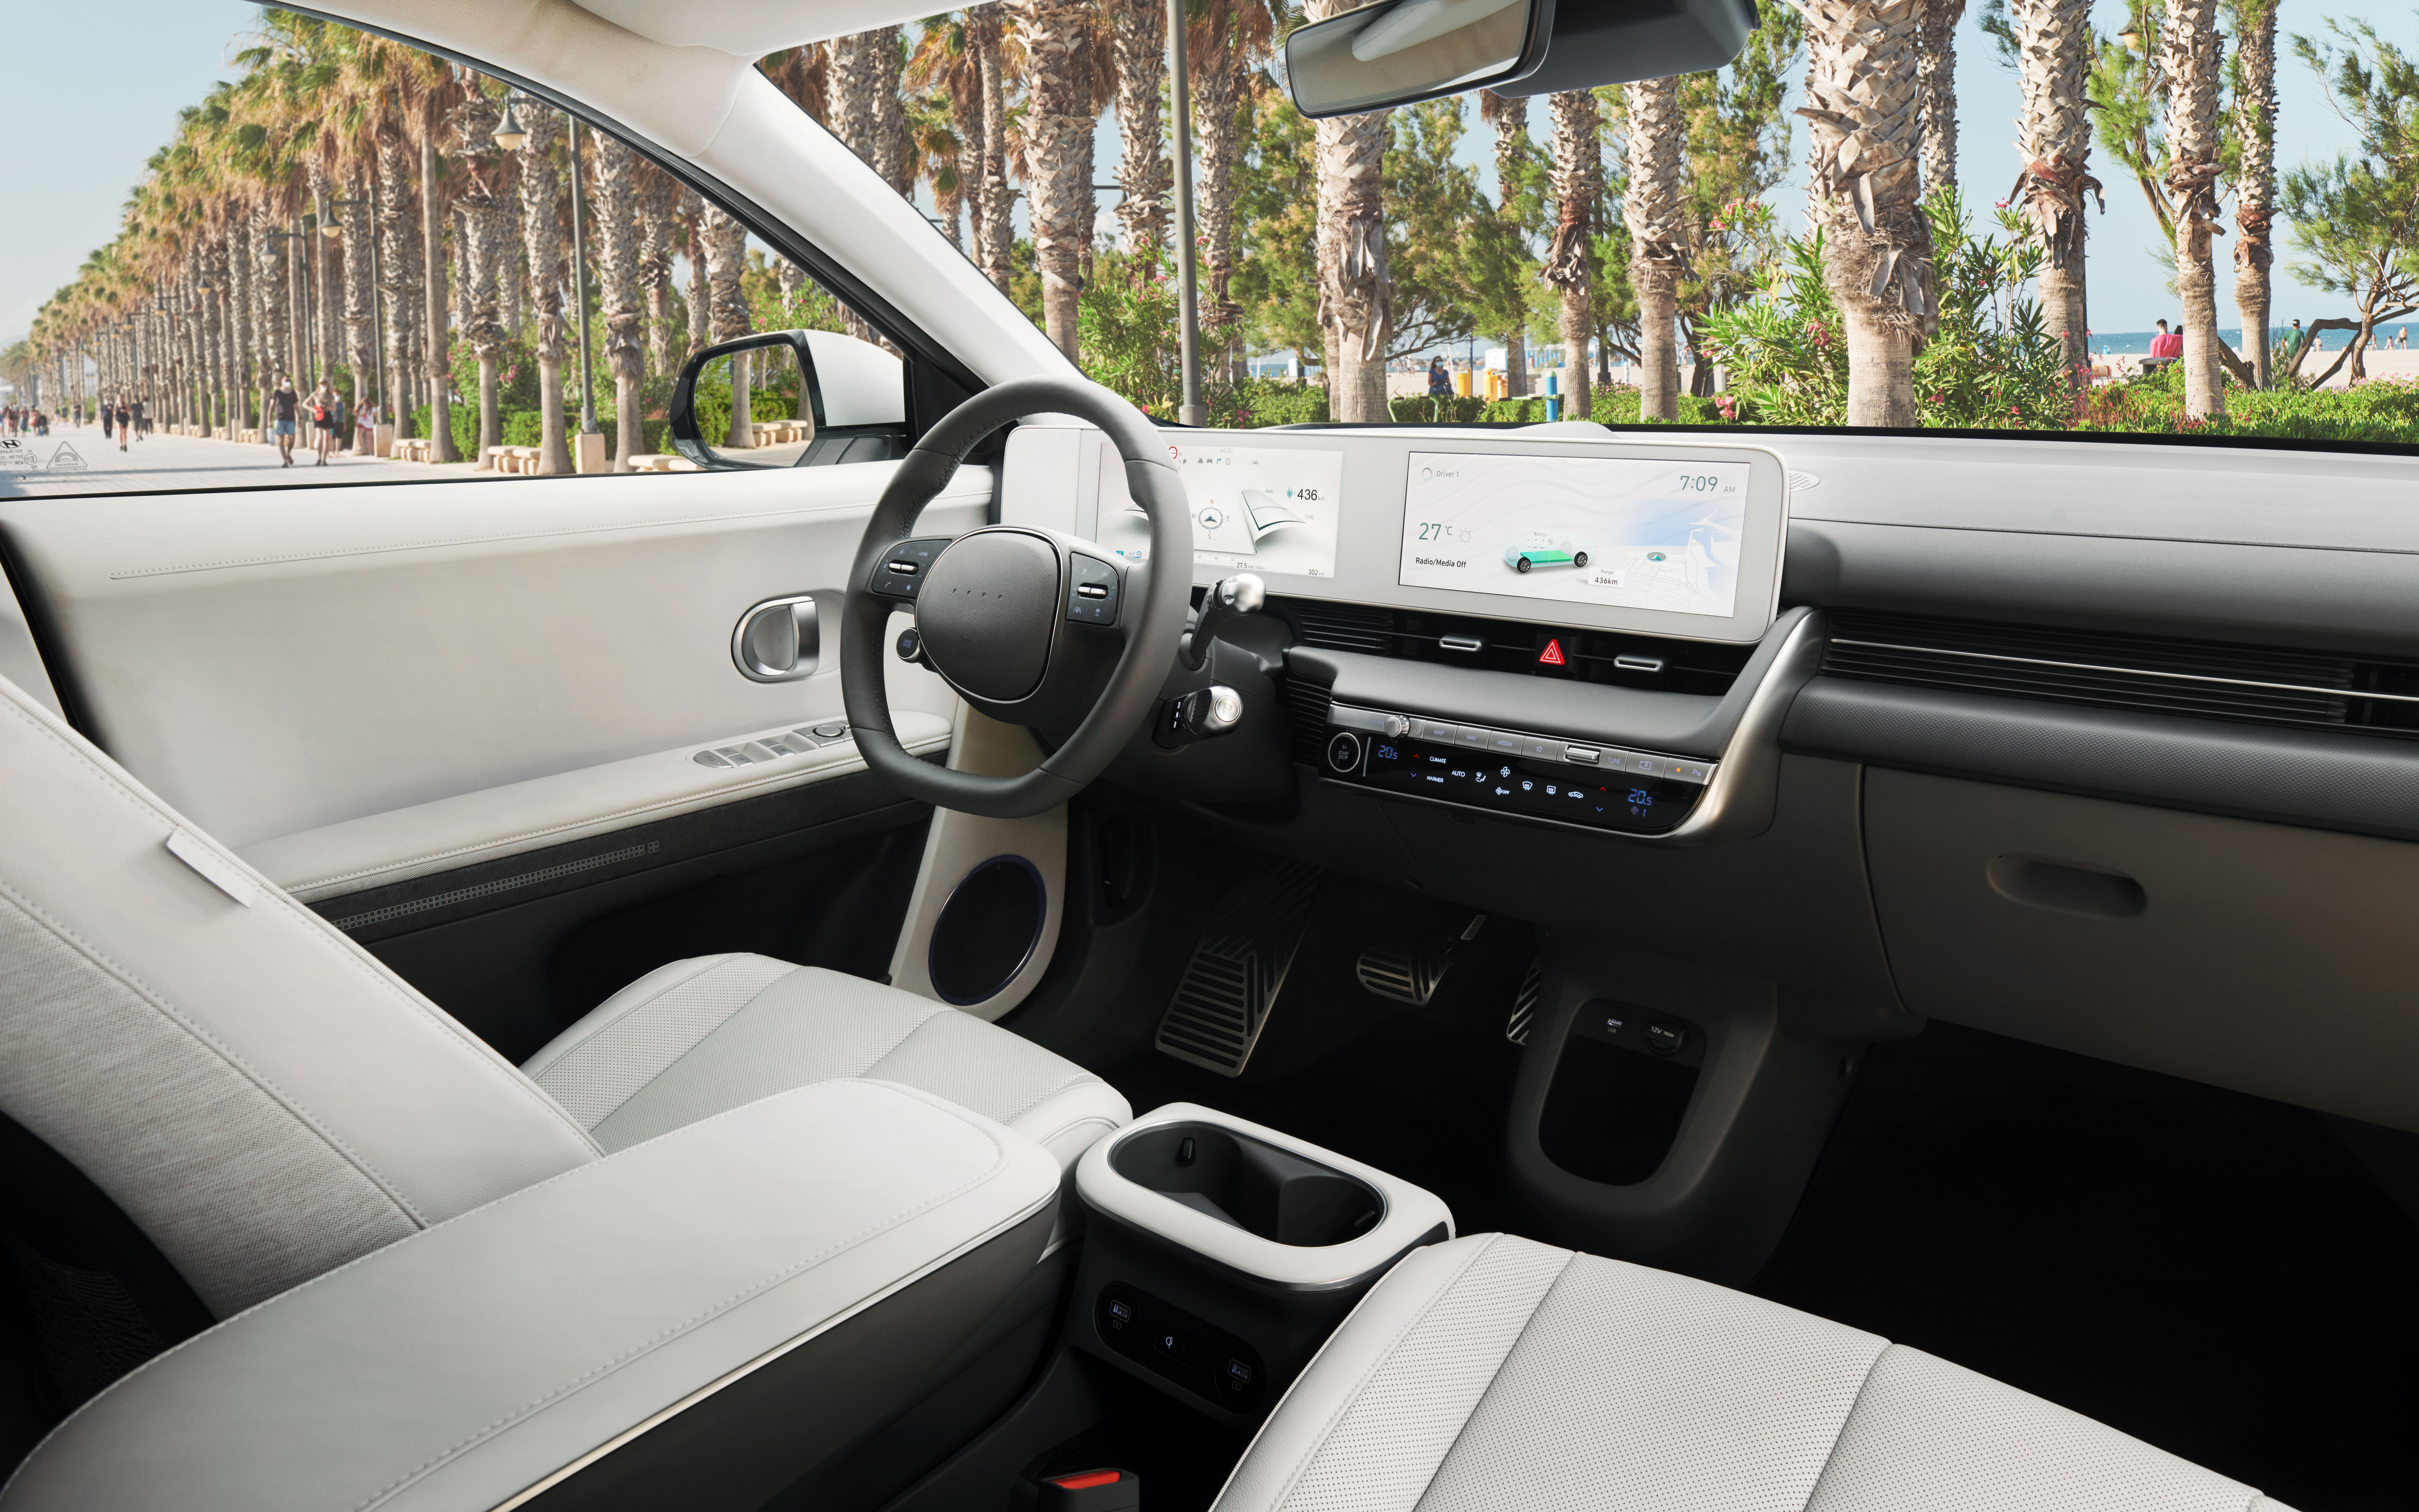 2023 Hyundai Ioniq 5 Q3 2023 Sales Interior Image 1